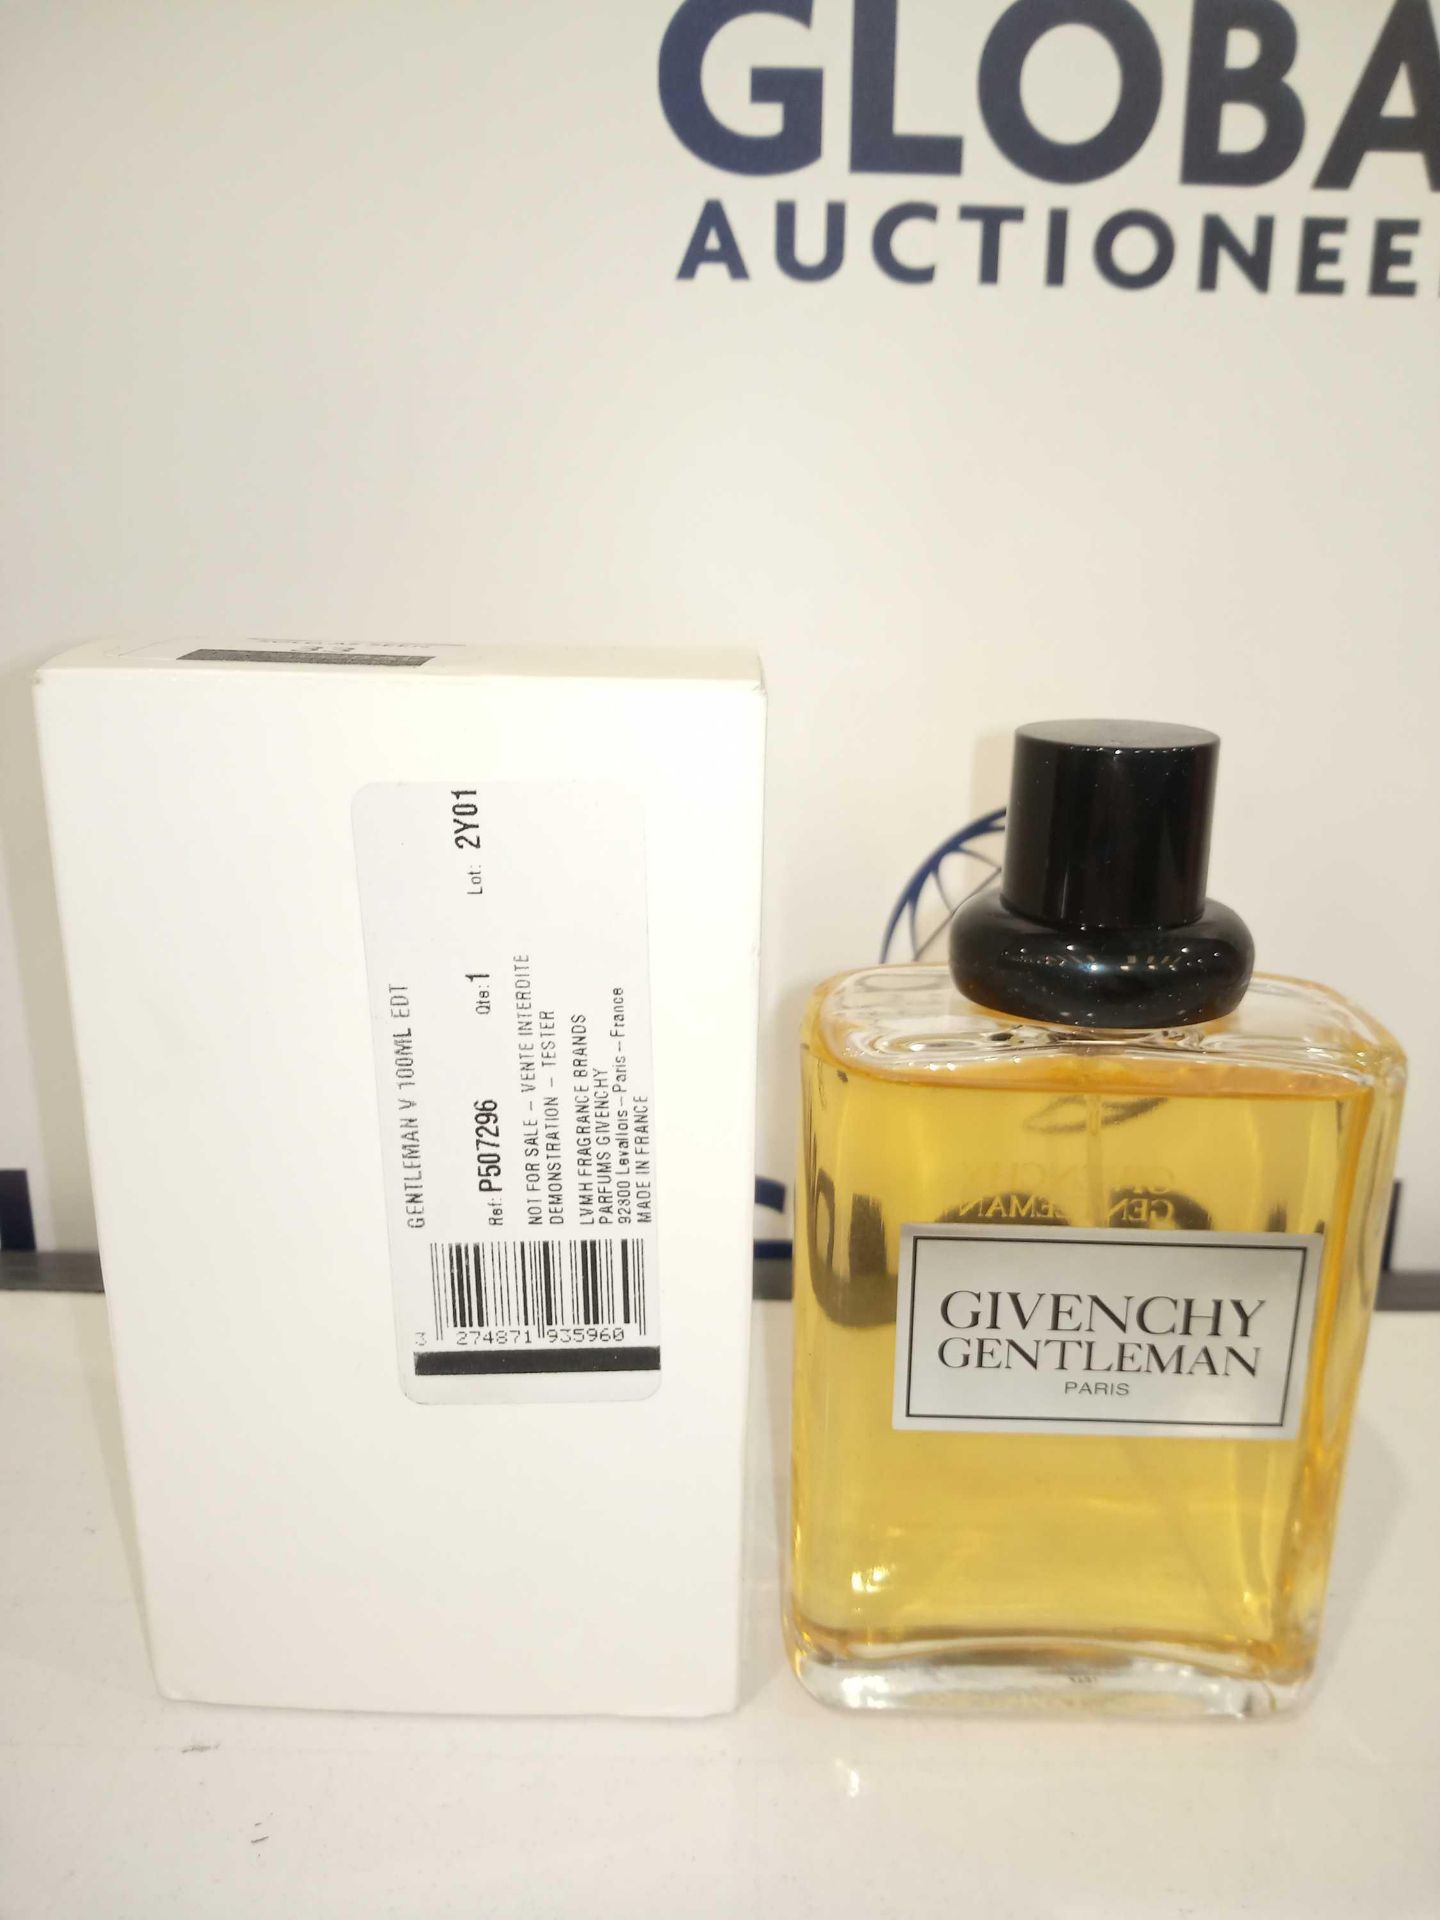 RRP £55 Boxed Brand New Full Tester Bottle Of Gentlemen Givenchy Paris 100Ml Eau De Toilette